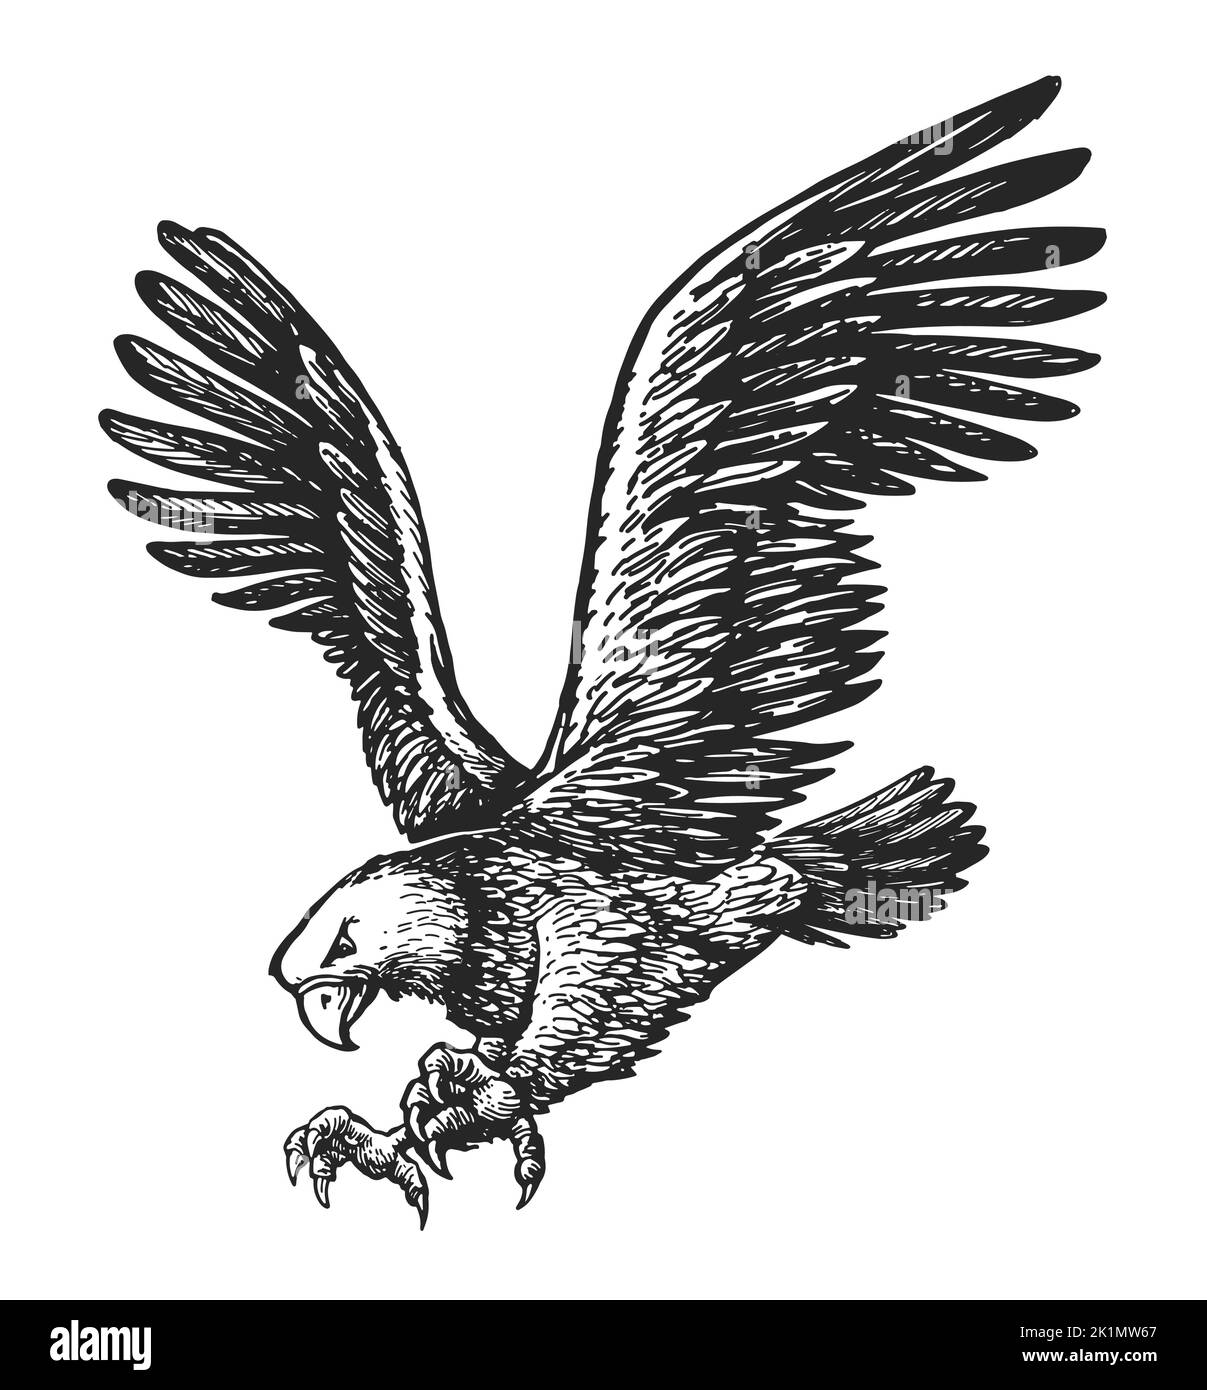 Weißkopfseeadler mit Talonkrallen nach vorne und Flügel ausgebreitet. Skizze für Tiervögel. Vektor-Illustration im Vintage-Gravurstil Stock Vektor